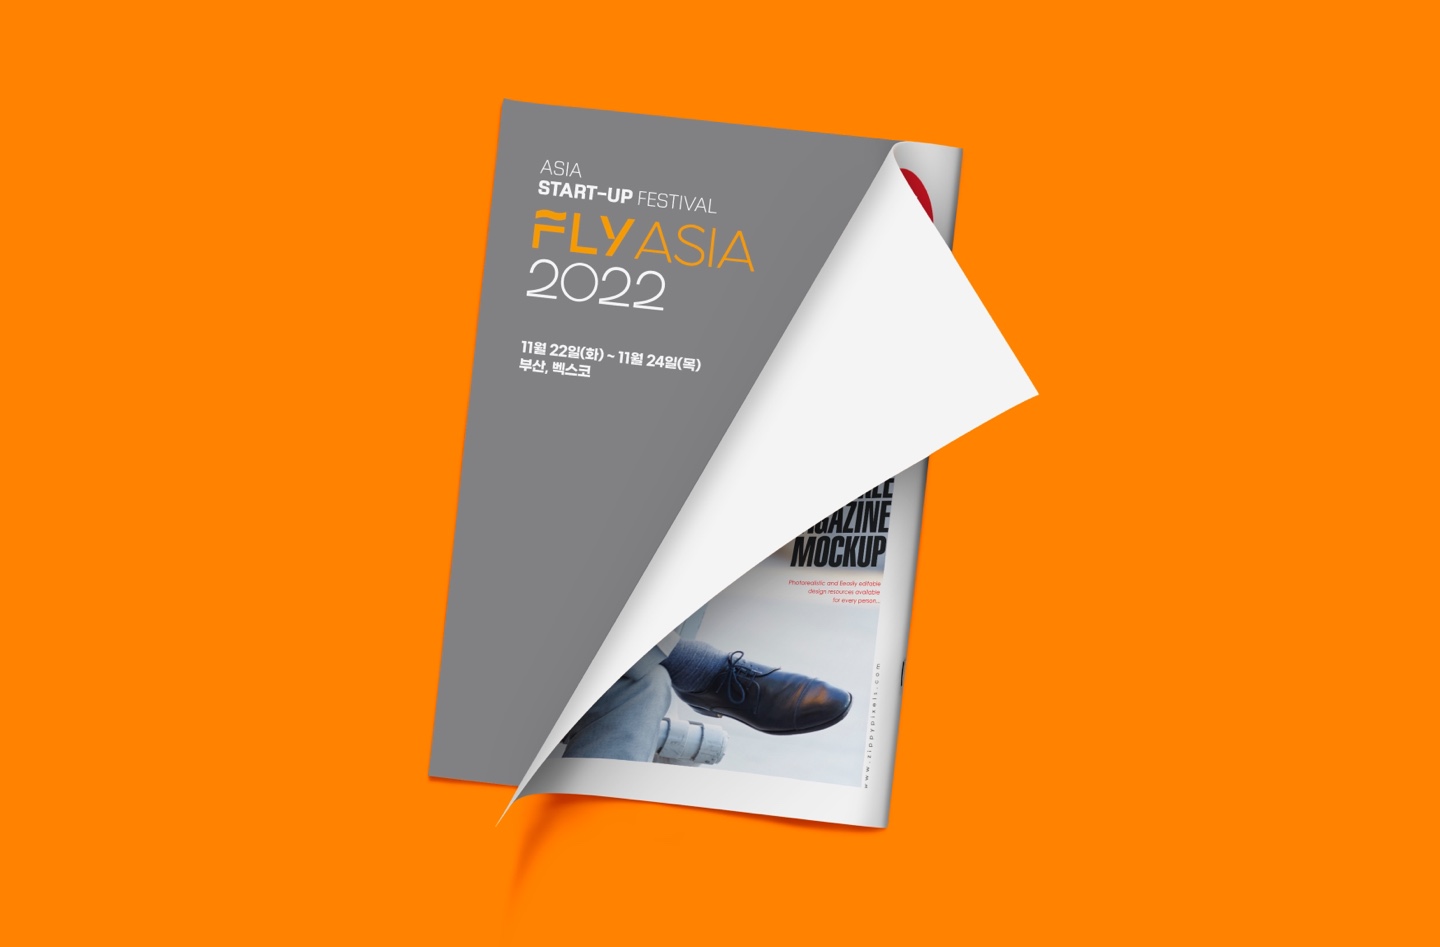 (더팩트)오는 22일~24일 아시아 창업 엑스포 'FLY ASIA 2022' 개최